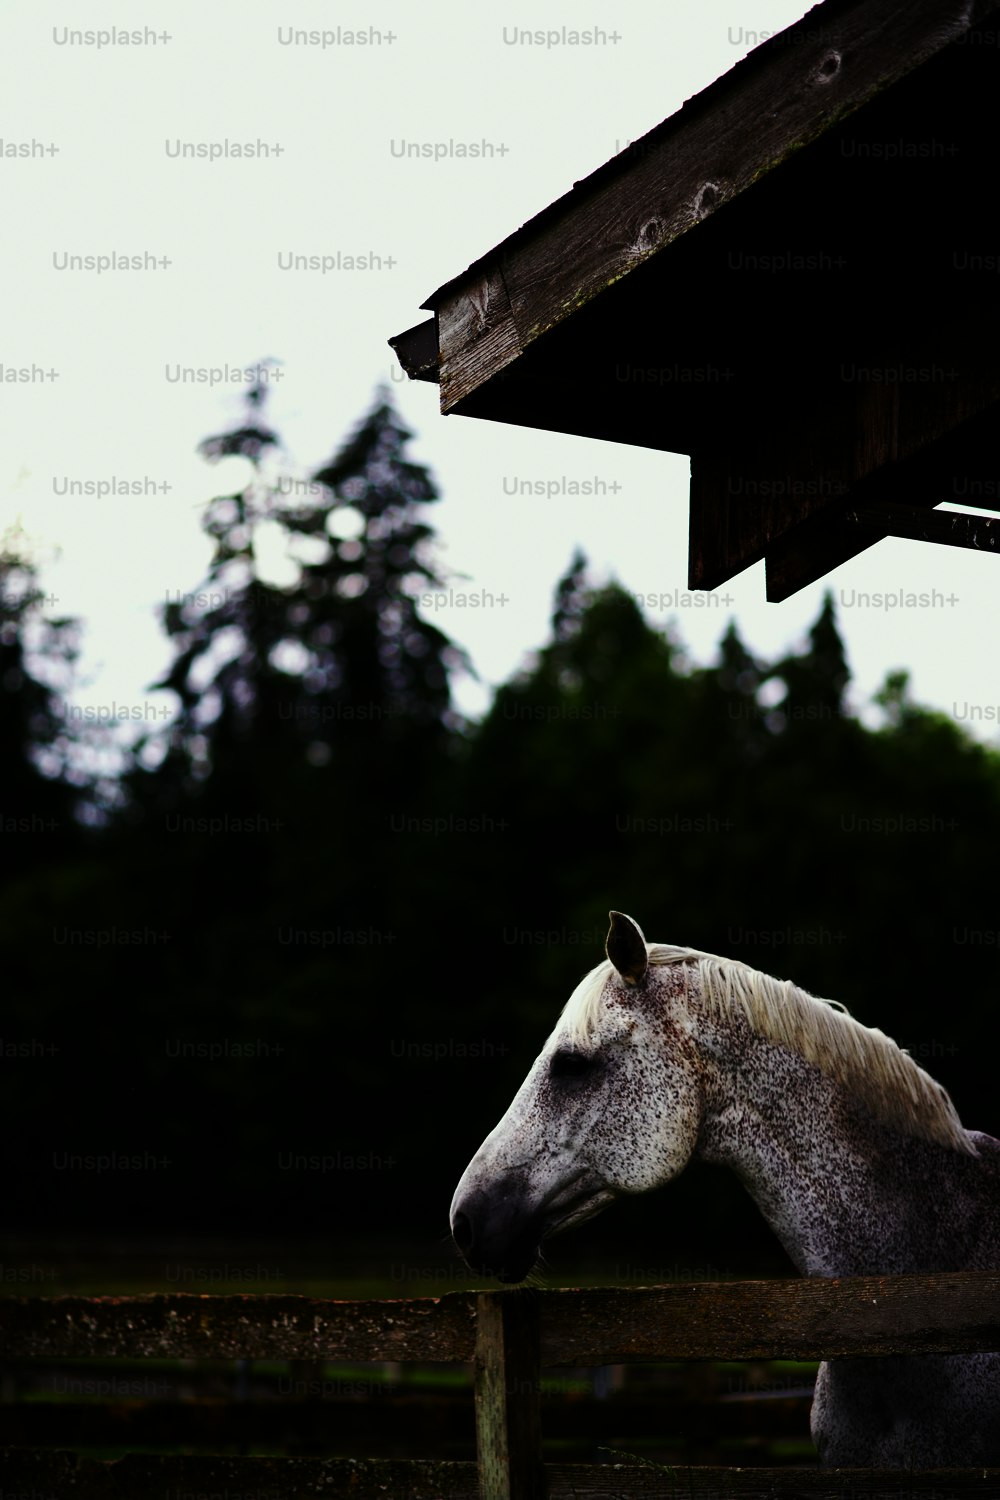 Un caballo blanco parado junto a una valla de madera